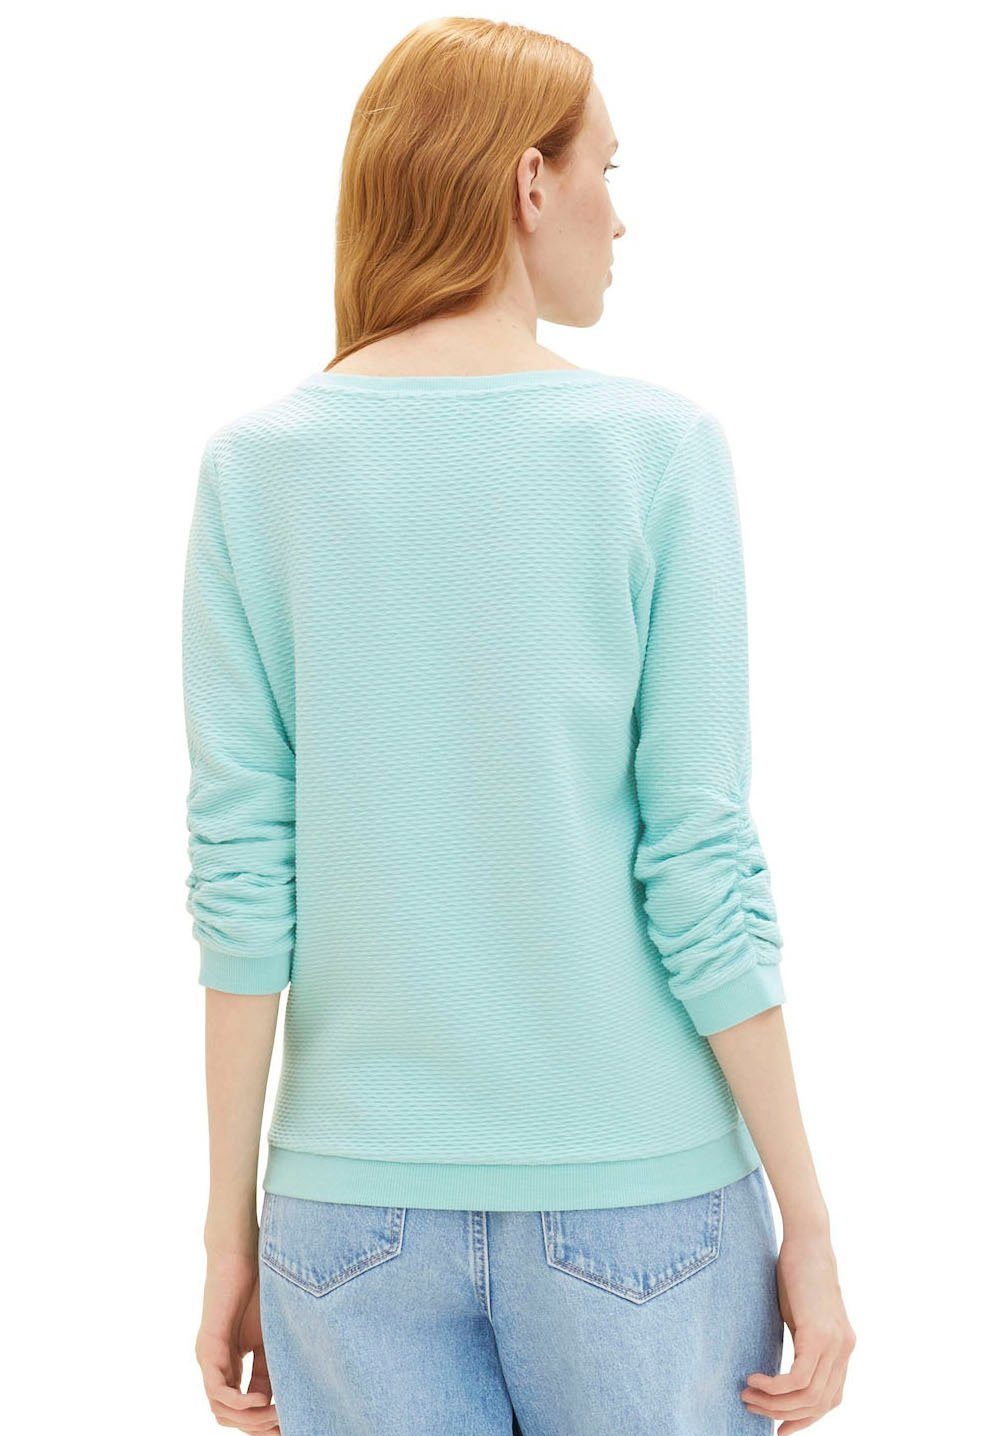 Denim TOM turquoise pastel Sweatshirt besonderer TAILOR Materialoberfläche mit